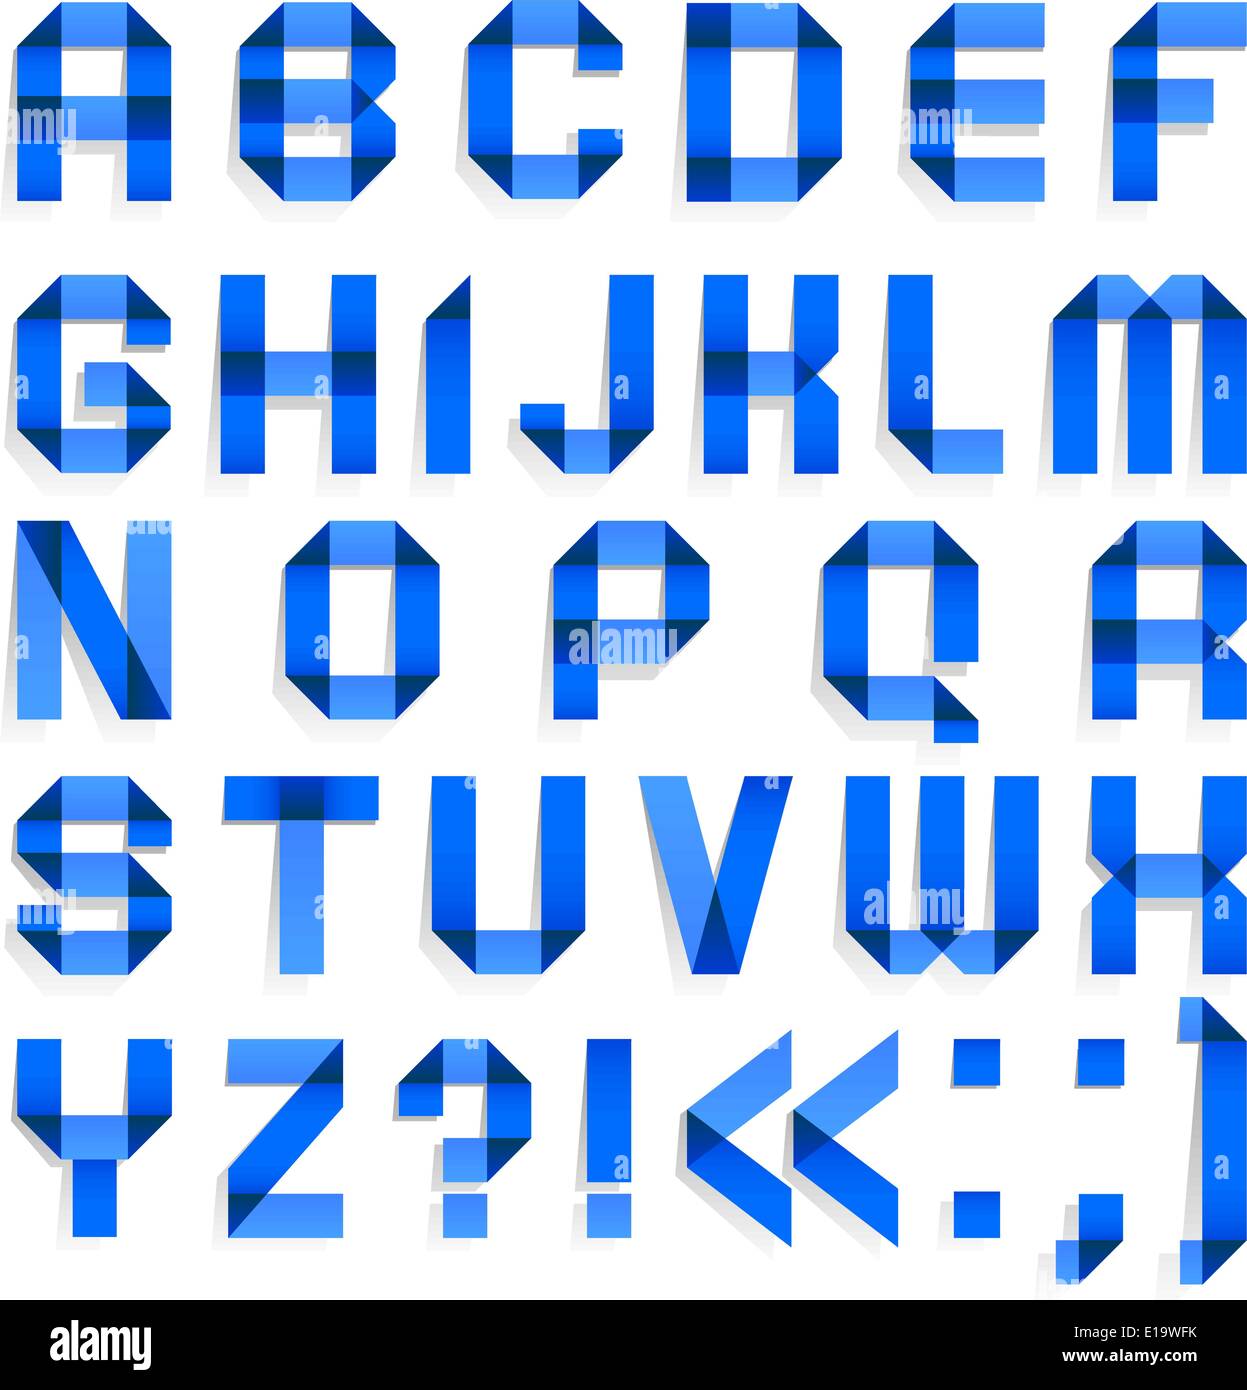 Papier de couleur plié Alphabet - lettres bleues. (A, B, C, D, E, F, G, H, I, J, K, L, M, N, O, P, Q, R, S, T, U, V, W, X, Y, Z). Illustration de Vecteur